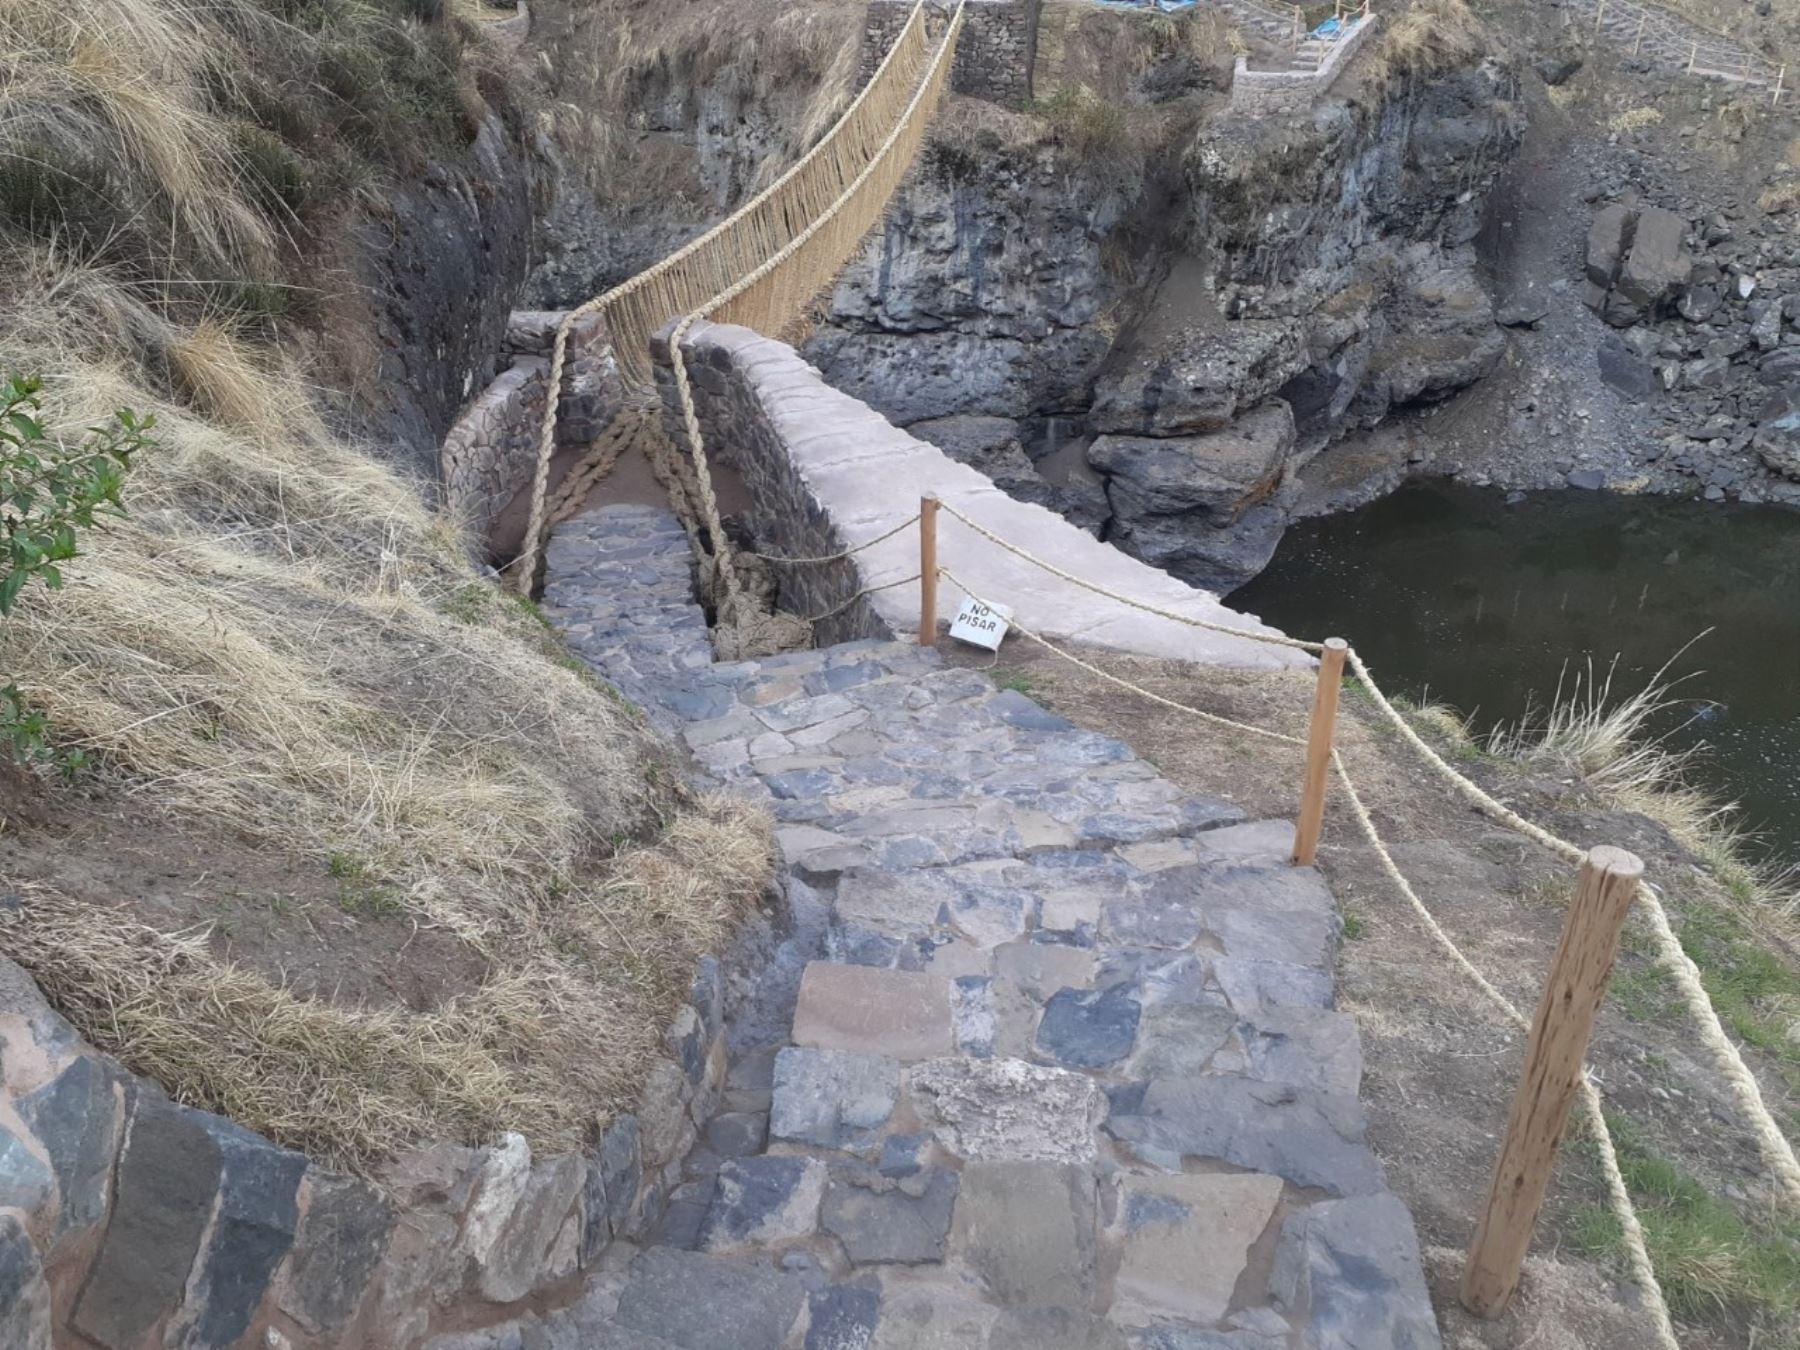 La Dirección de Cultura de Cusco restauró y puso en valor los caminos rituales al puente de origen inca Q’eswachaka, ubicado en la provincia de Anta. Foto: ANDINA/difusión.